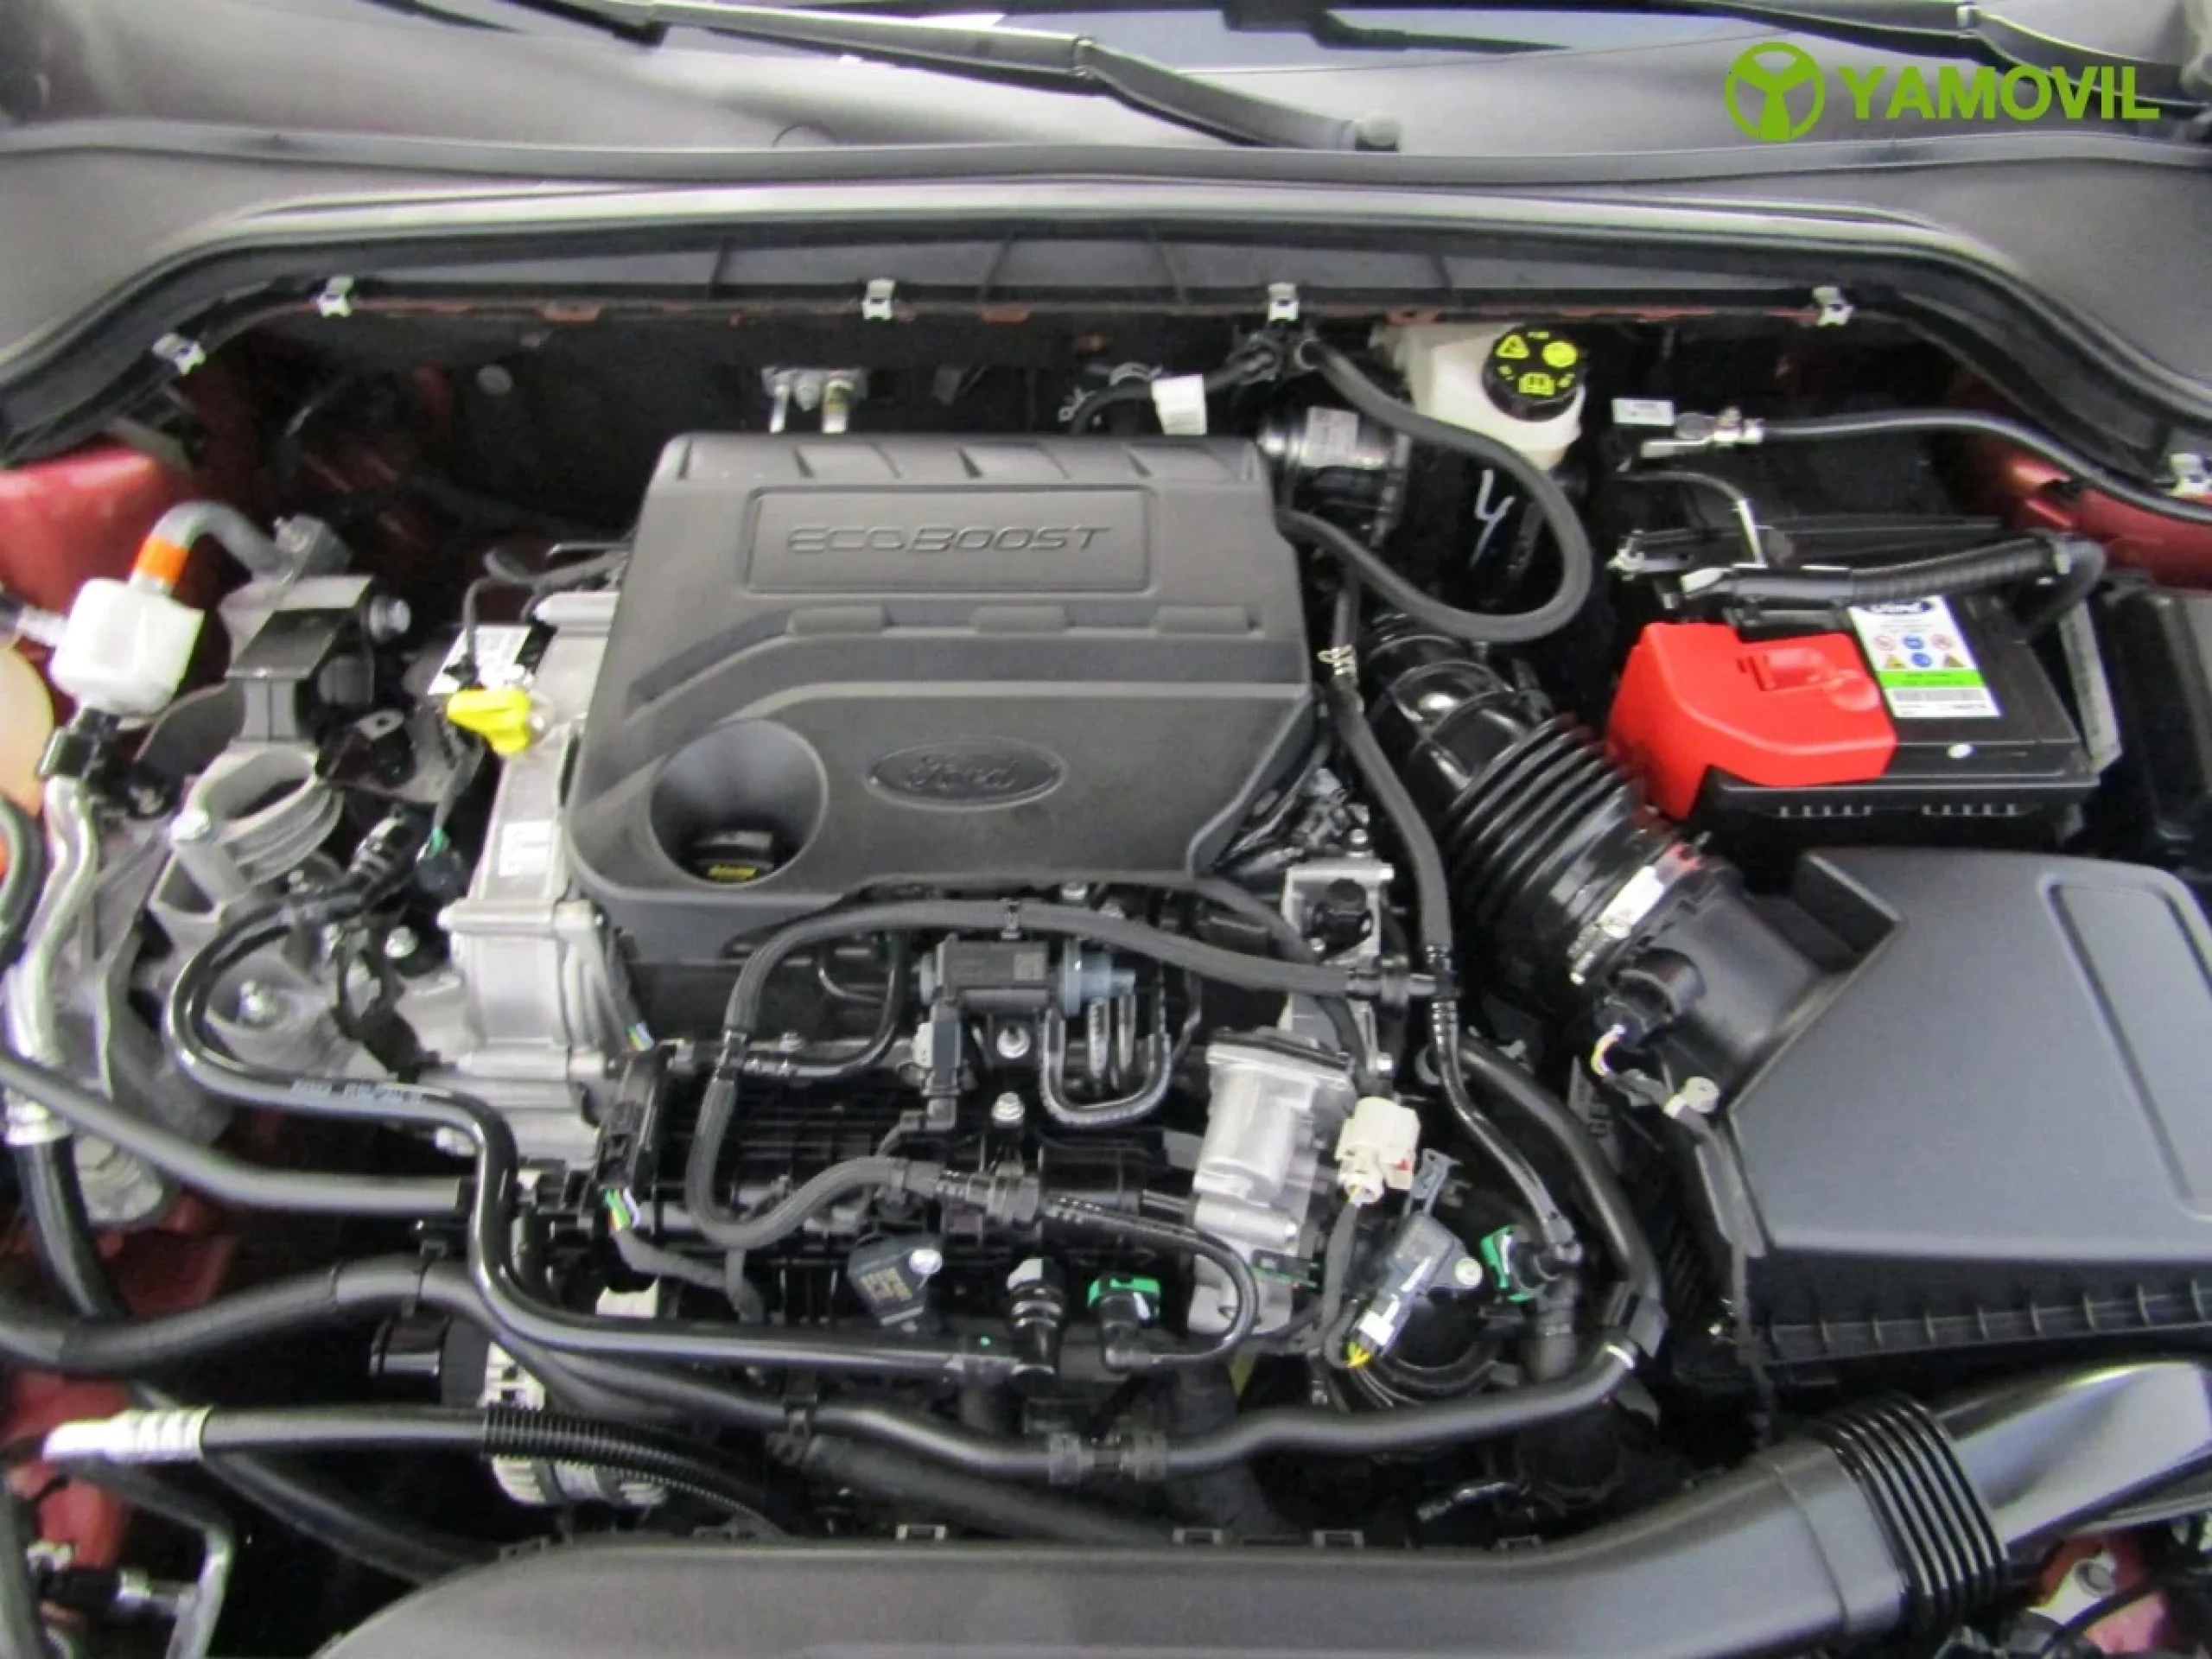 Ford Focus 1.0 Ecoboost Titanium Powershift 92 kW (125 CV) - Foto 8